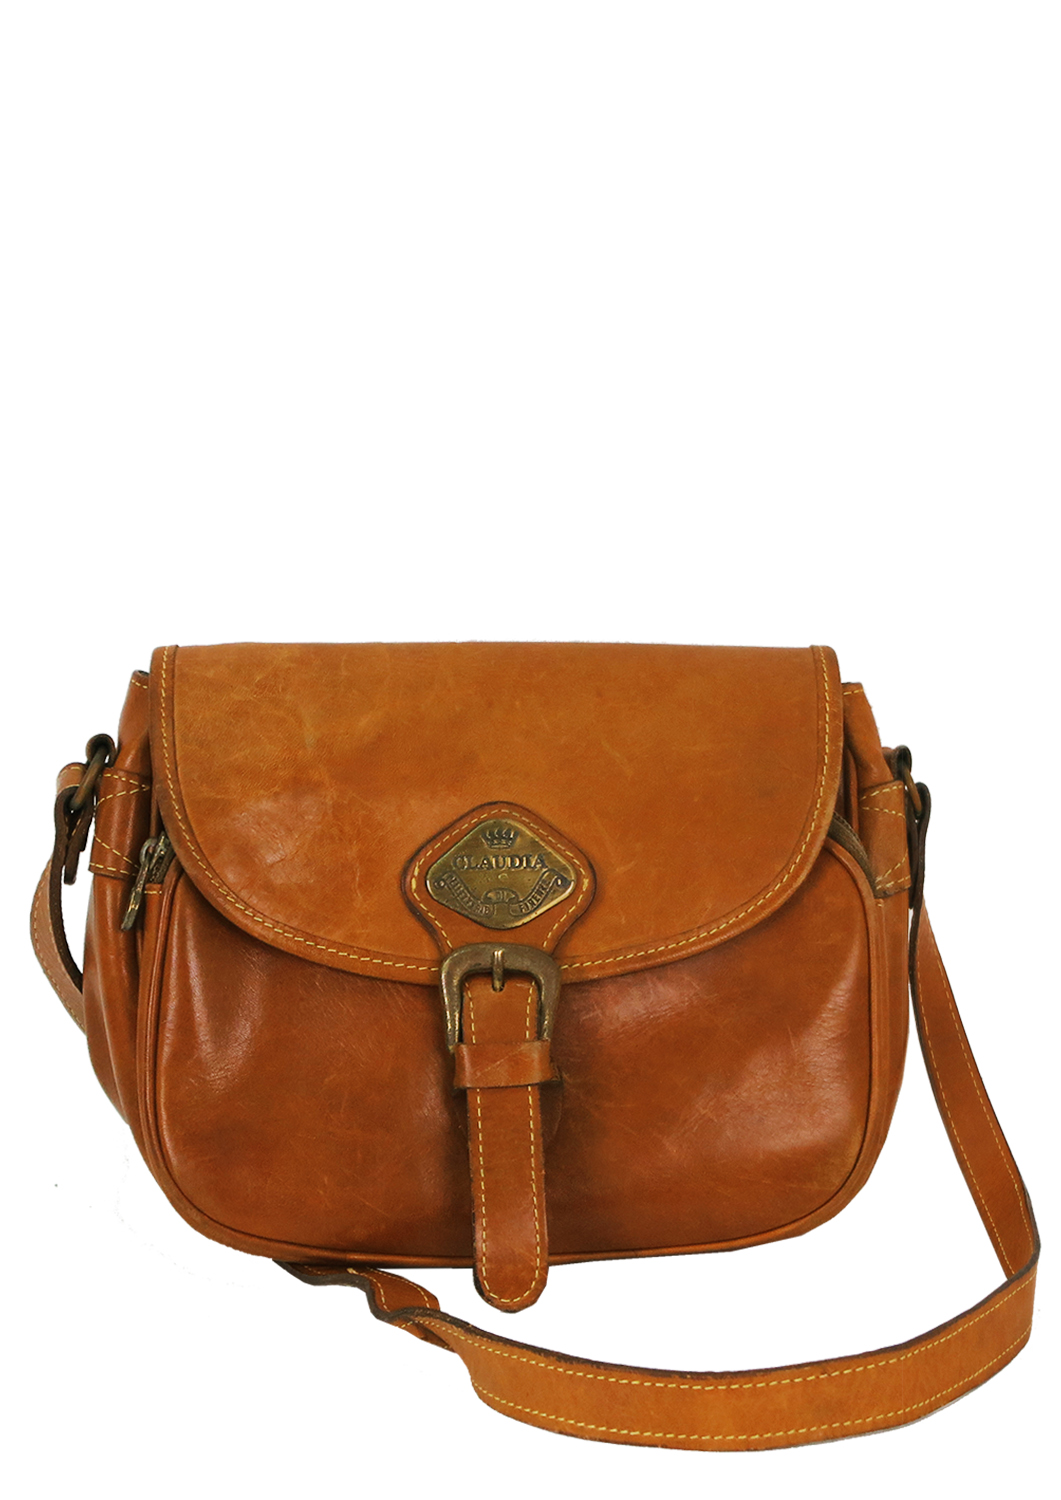 Leather Tan Brown Satchel Shoulder Bag with Adjustable Strap – Reign Vintage